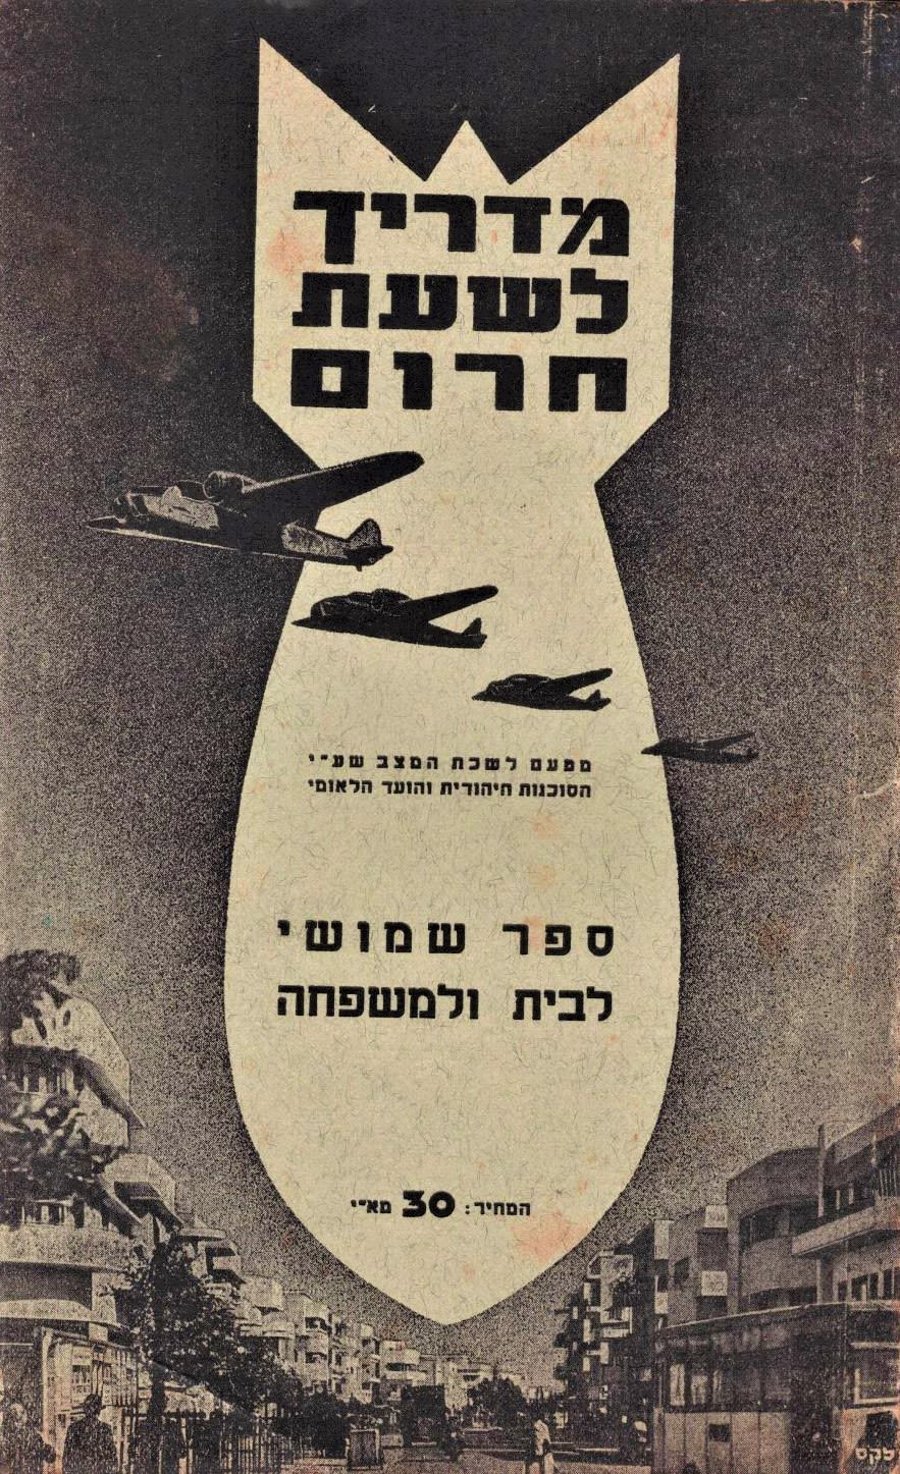 חוברת 'מדריך לשעת חרום', כיצד להתגונן מהפצצה על מרכז הארץ. תל אביב שנת ת"ש (1940)